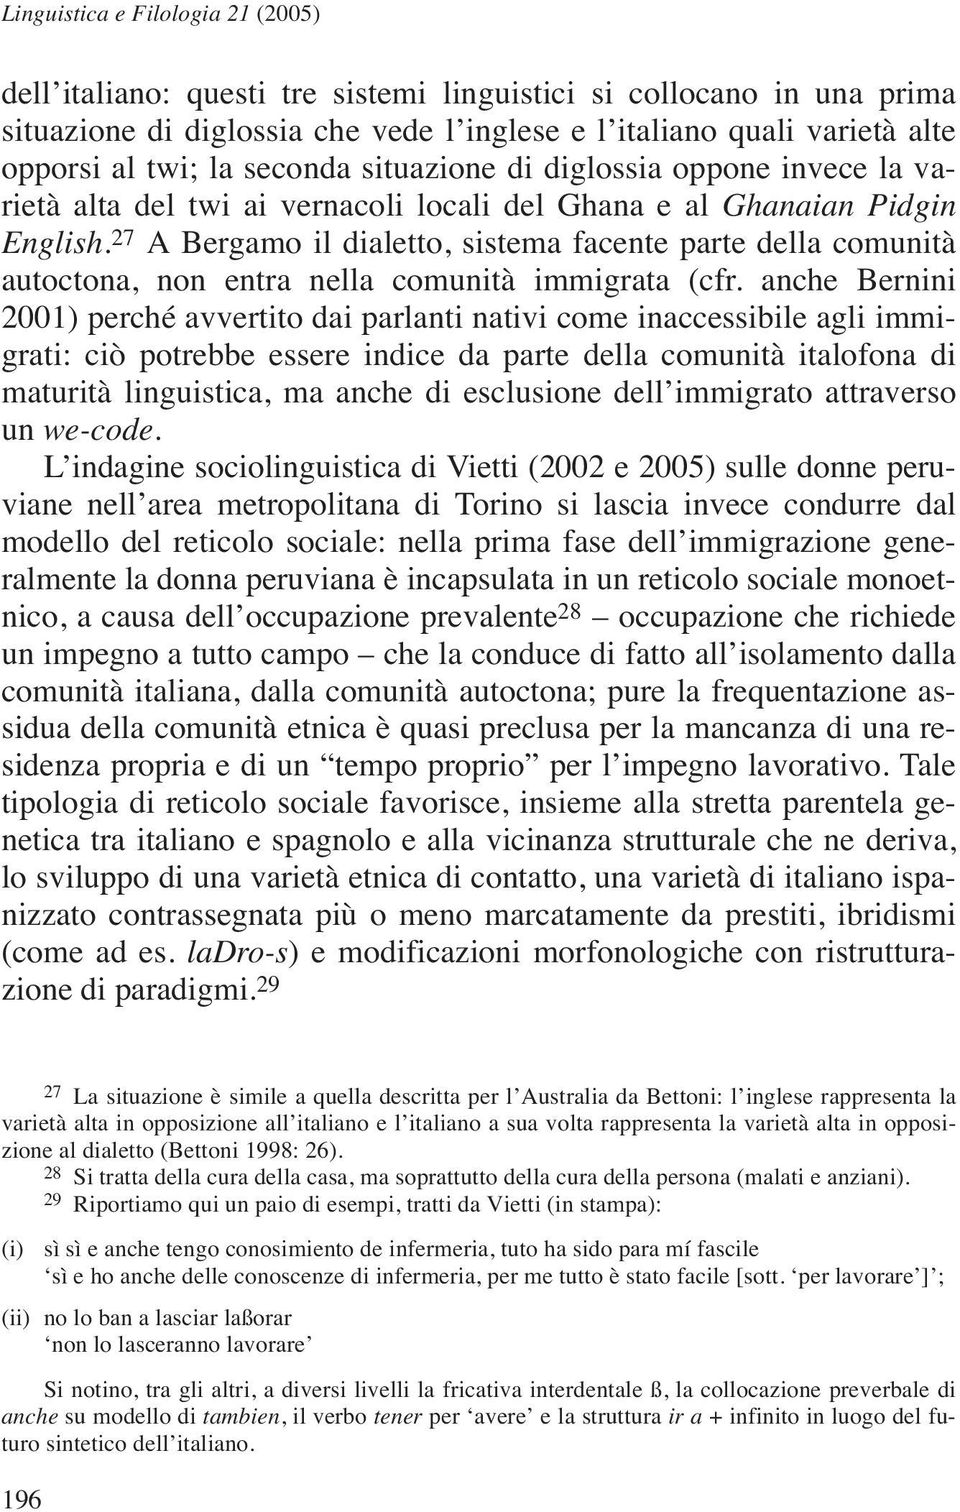 27 A Bergamo il dialetto, sistema facente parte della comunità autoctona, non entra nella comunità immigrata (cfr.